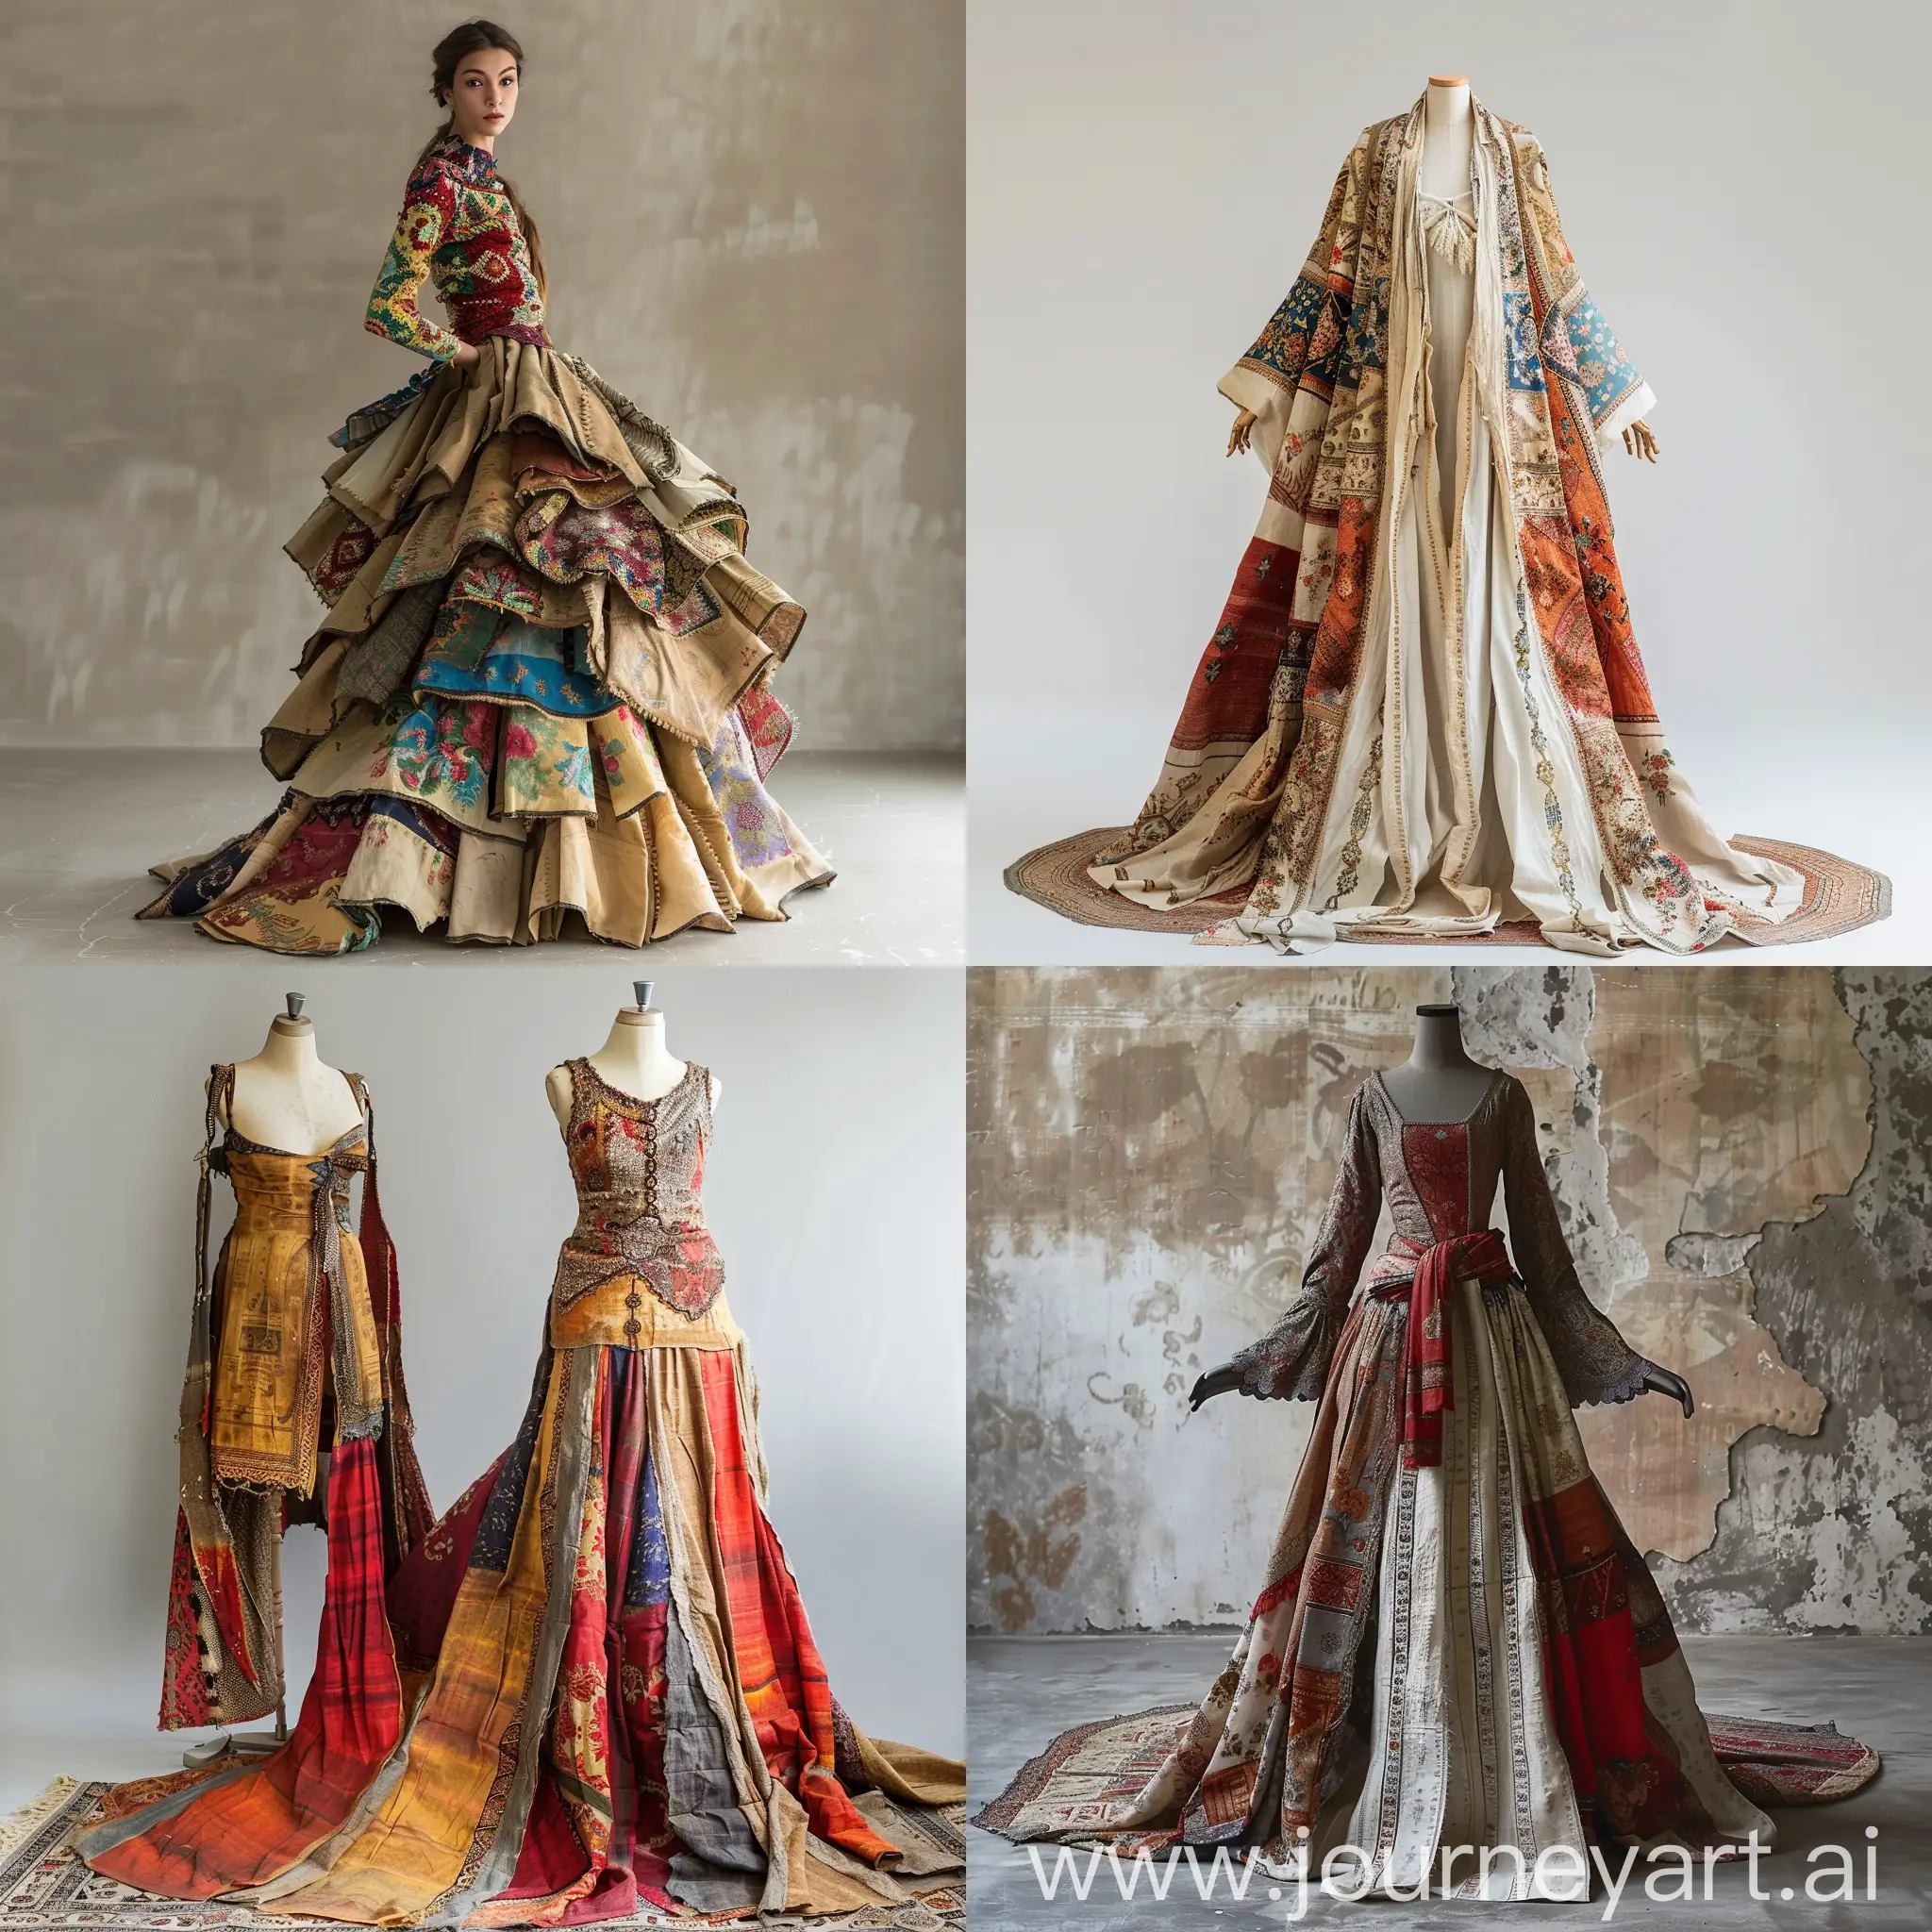 Dress design with real Persian rice sacks